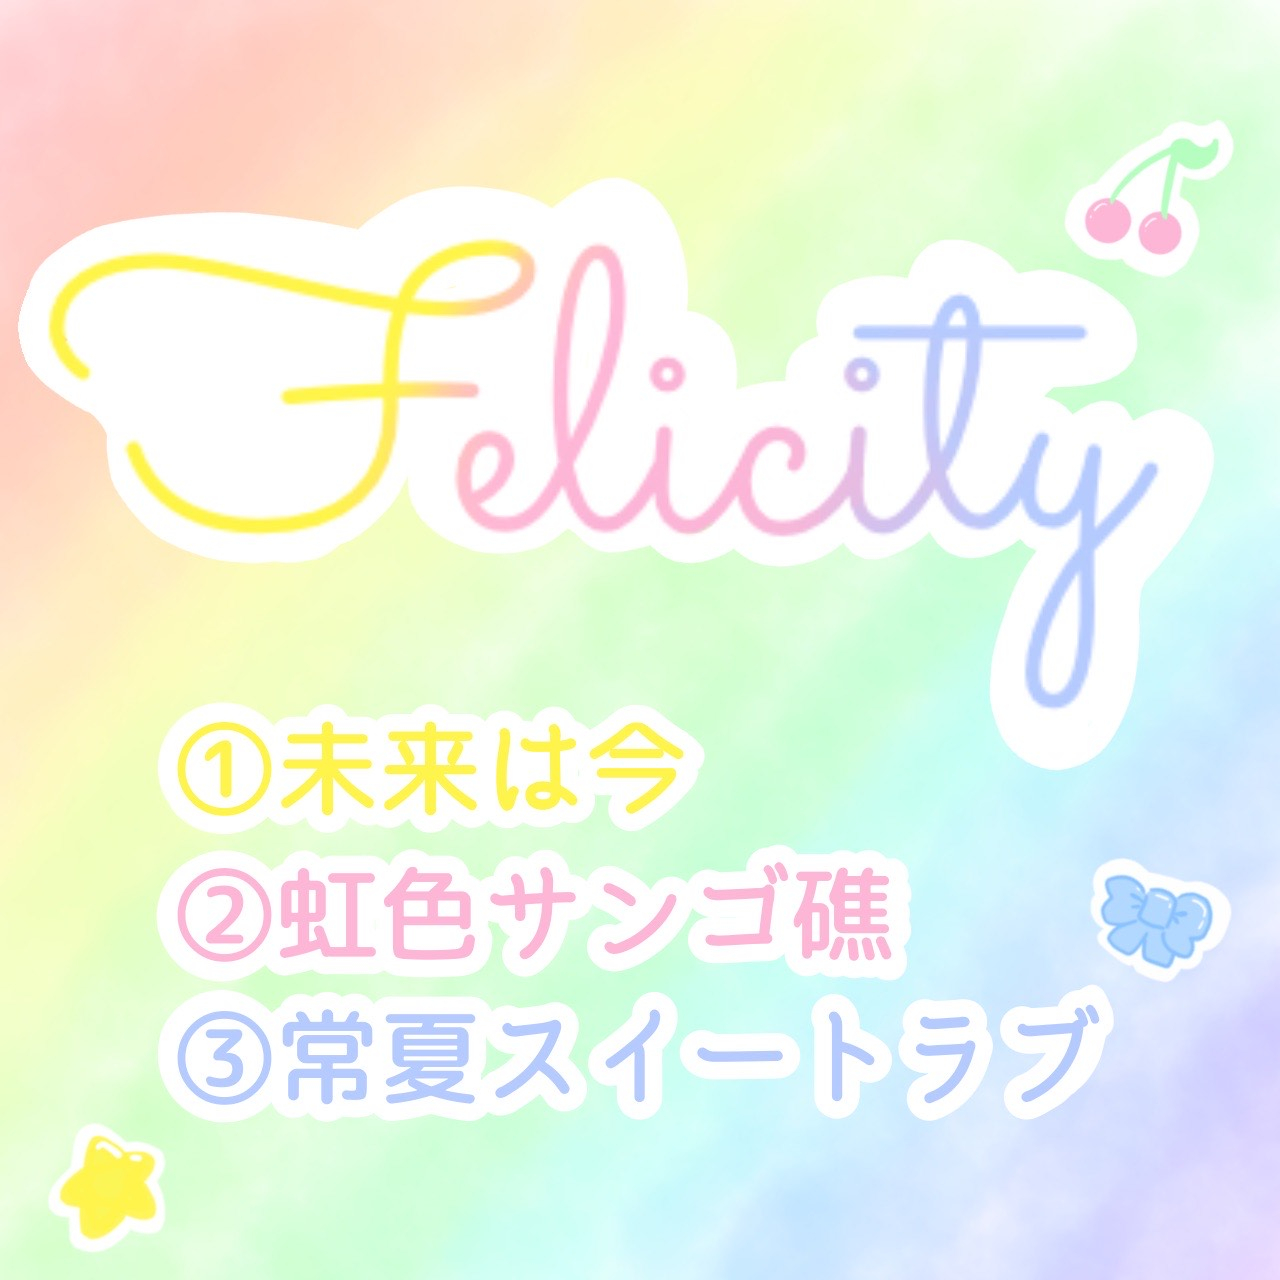 手焼きCD『Felicity』 サムネイル1番目